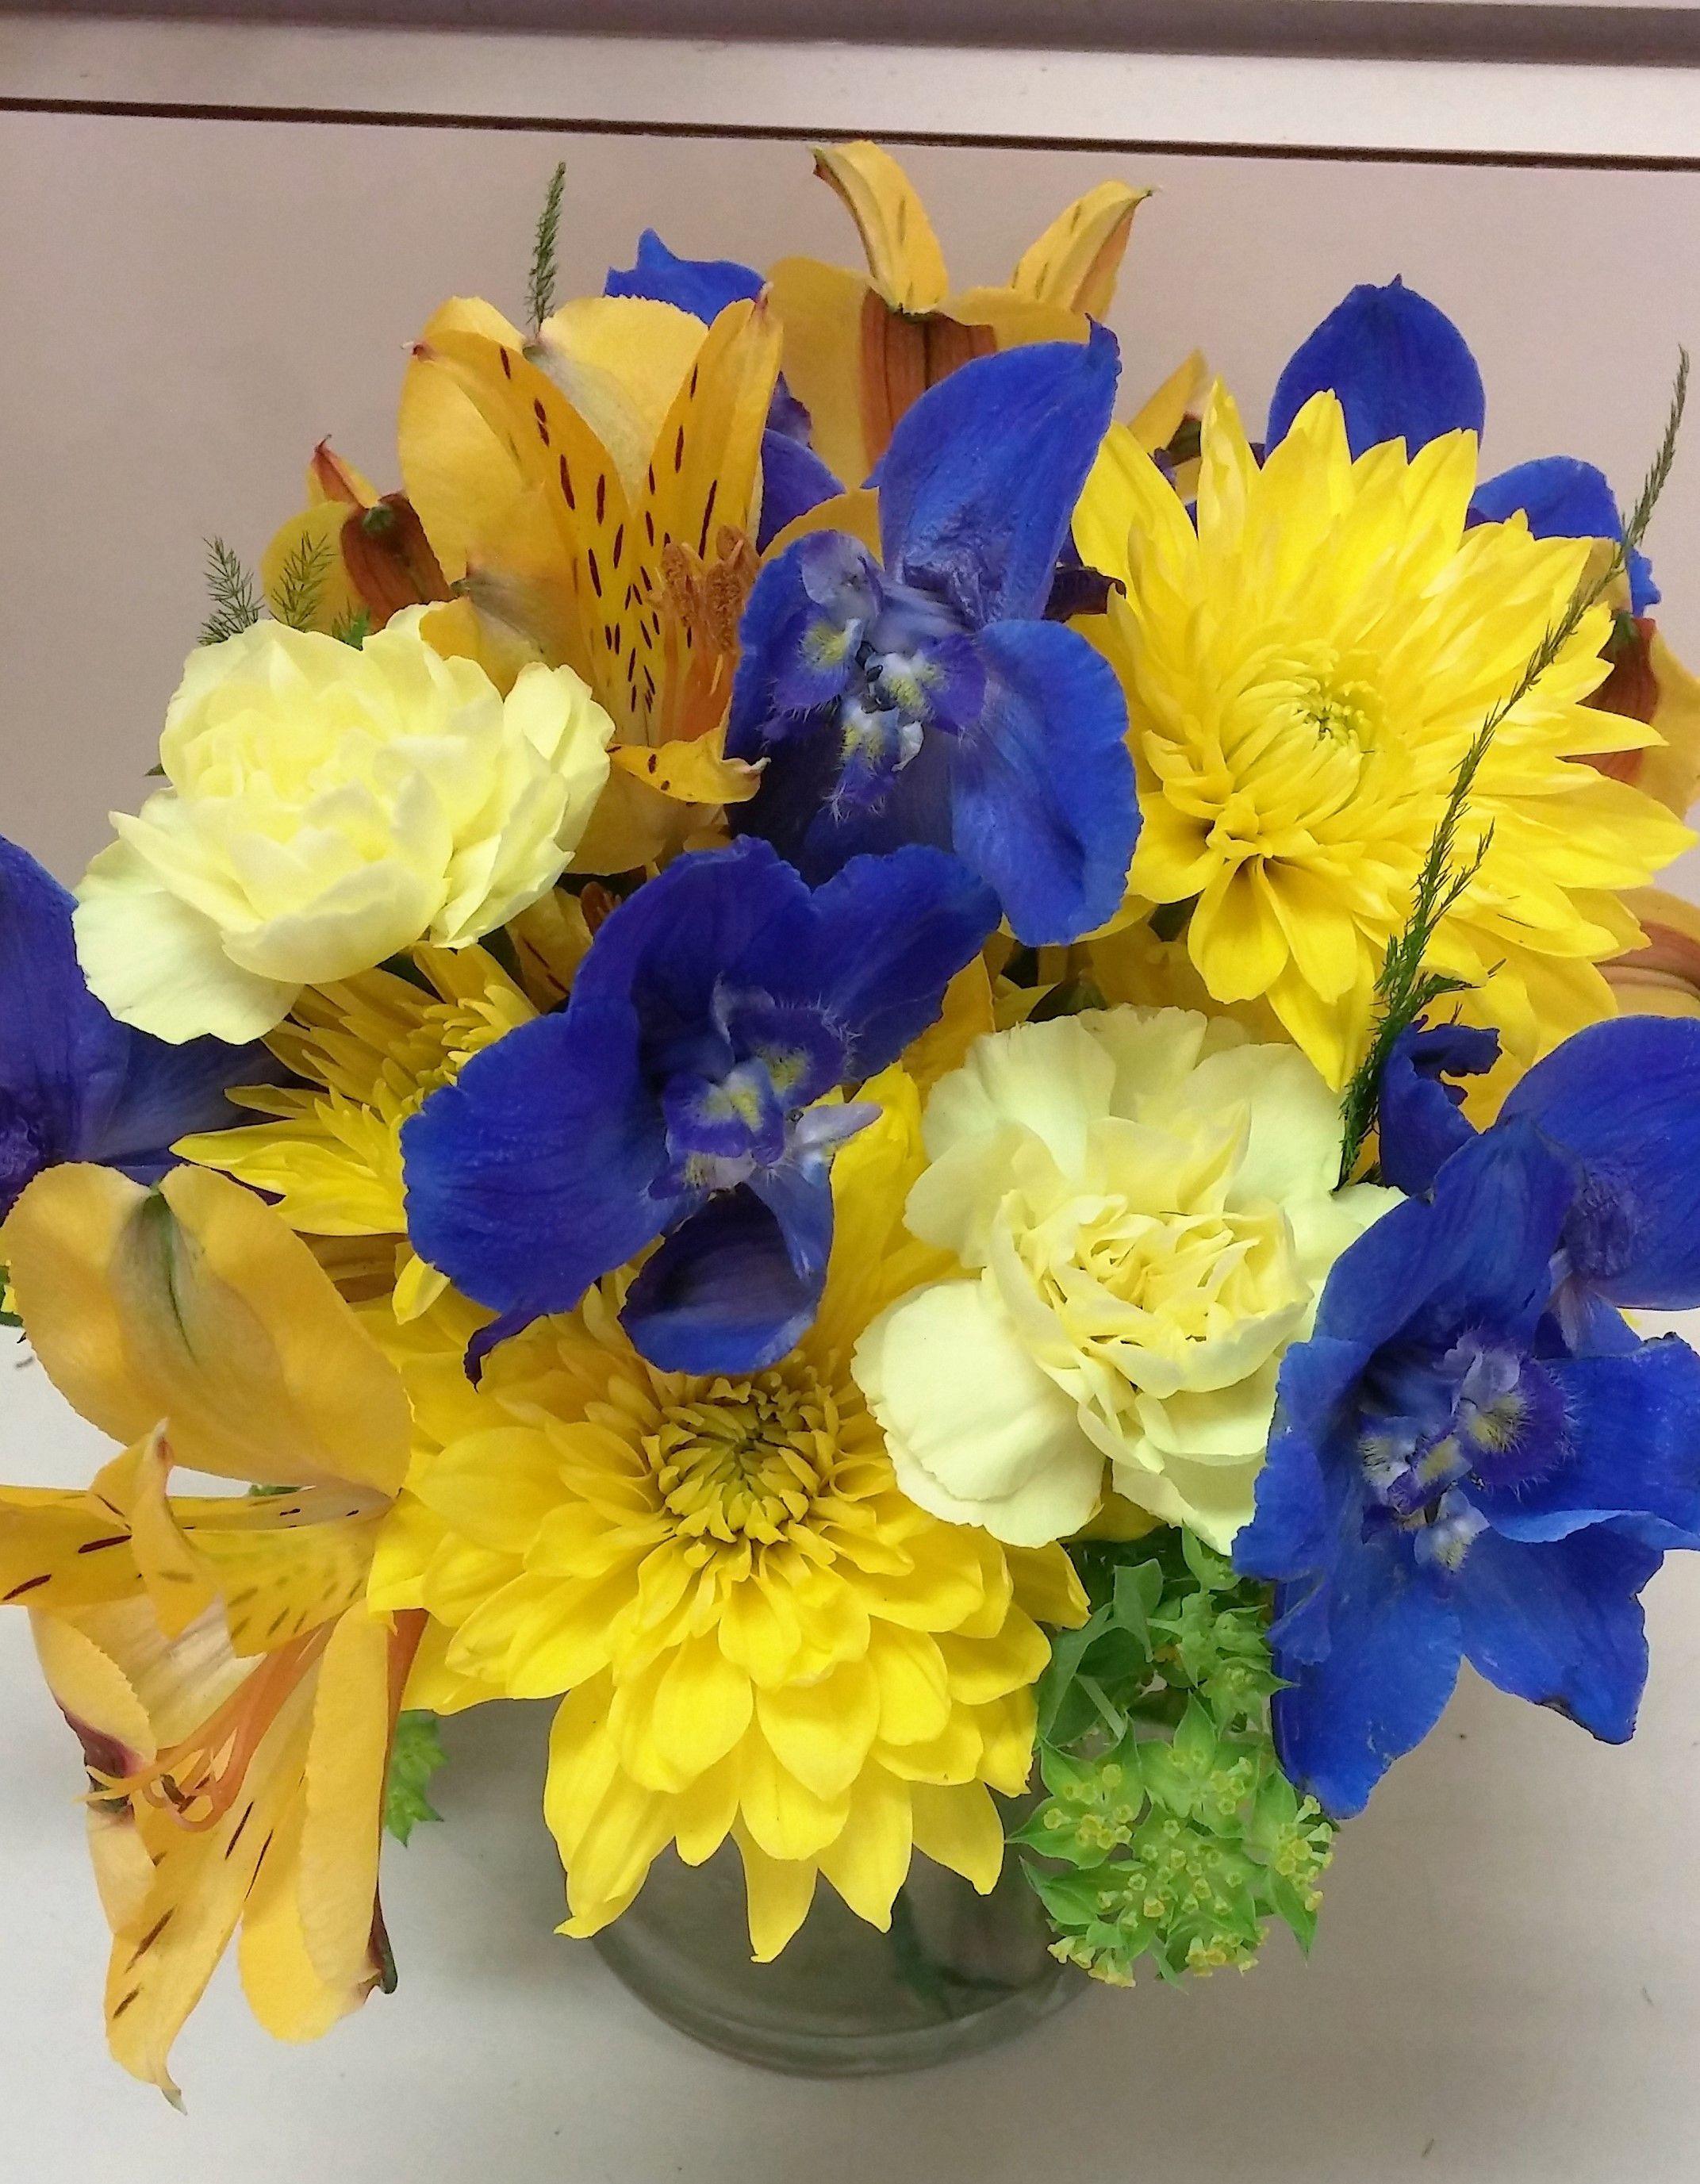 Blue Floral U Logo - u of m flower arrangement. maize and blue flowers. blue delphinium ...